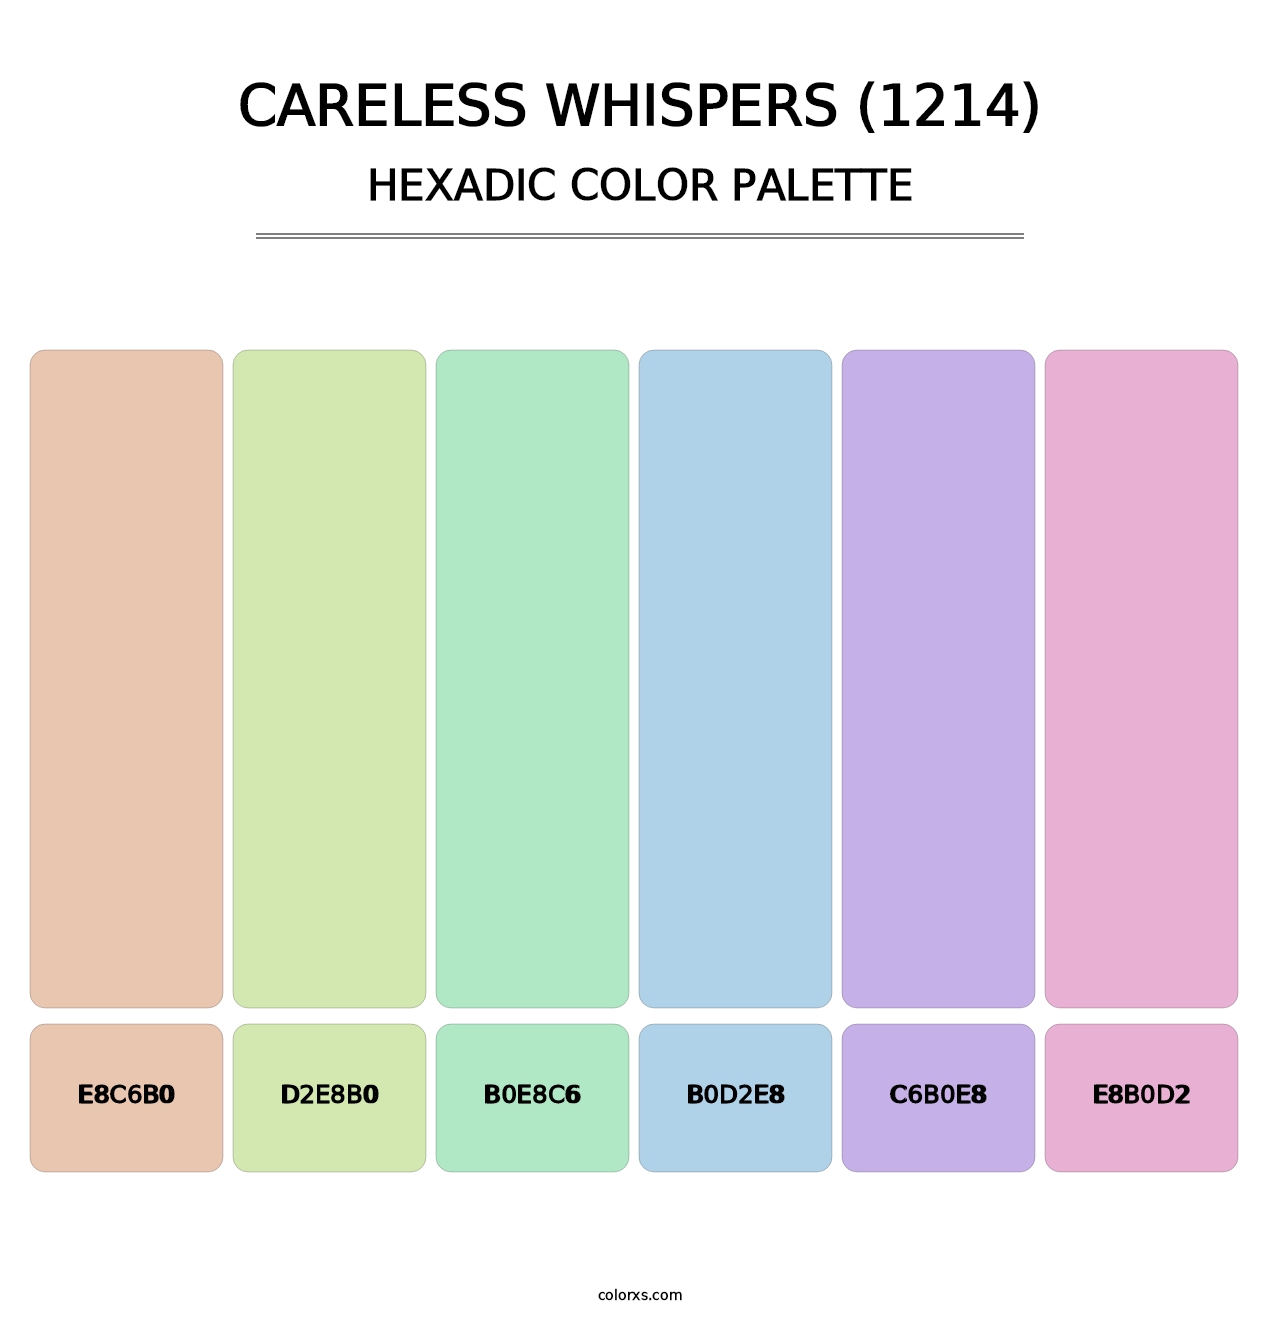 Careless Whispers (1214) - Hexadic Color Palette